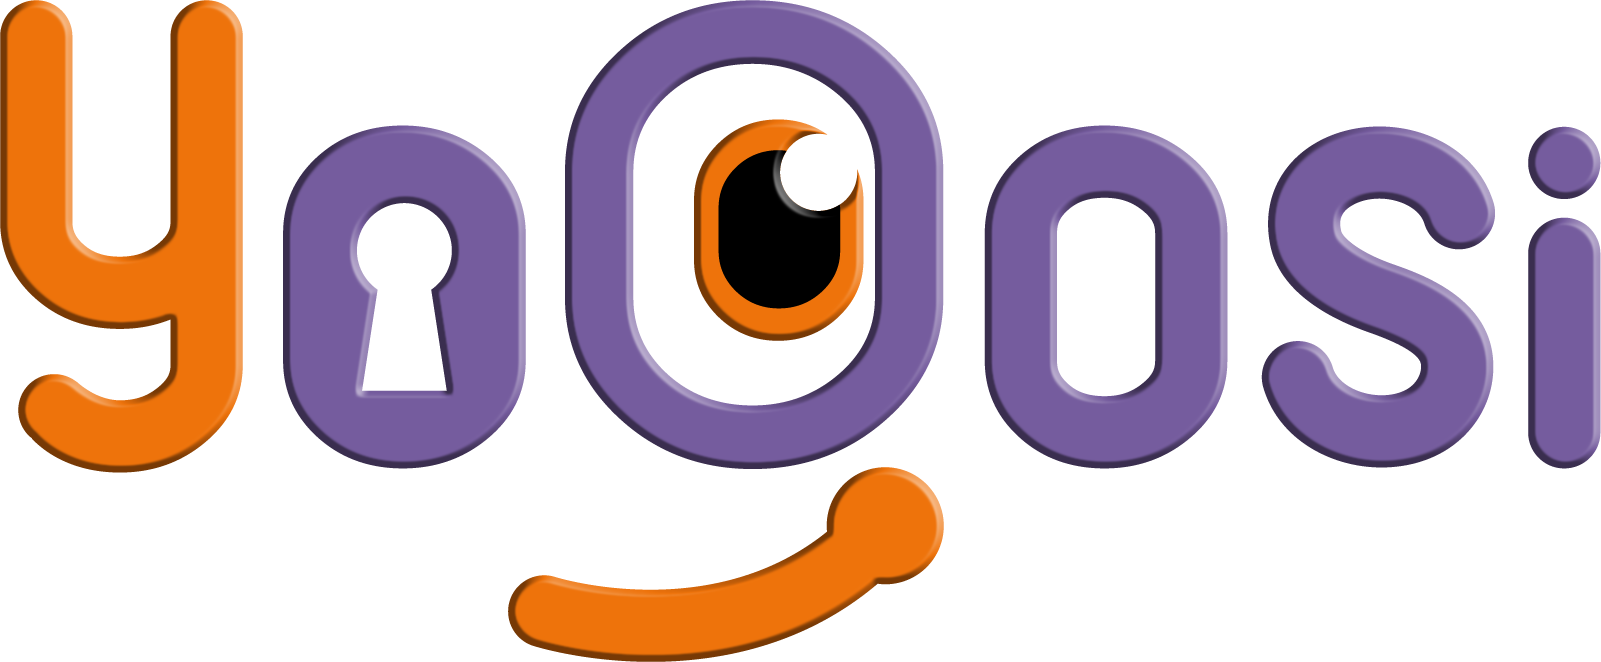 Uchannel Ventures logo